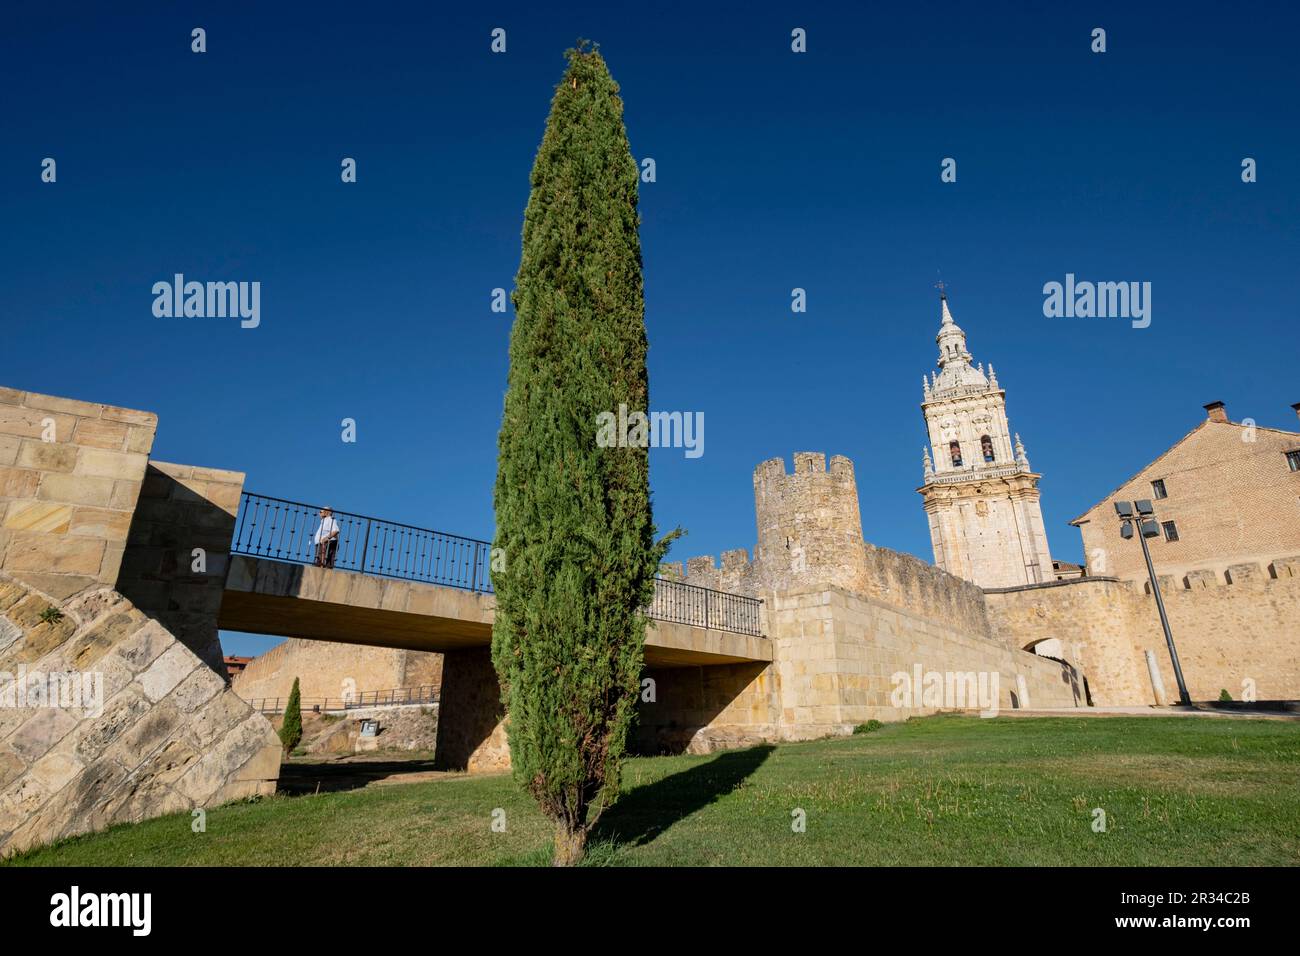 murallas medievales, El Burgo de Osma, Soria, comunidad autónoma de Castilla y León, Spain, Europe. Stock Photo